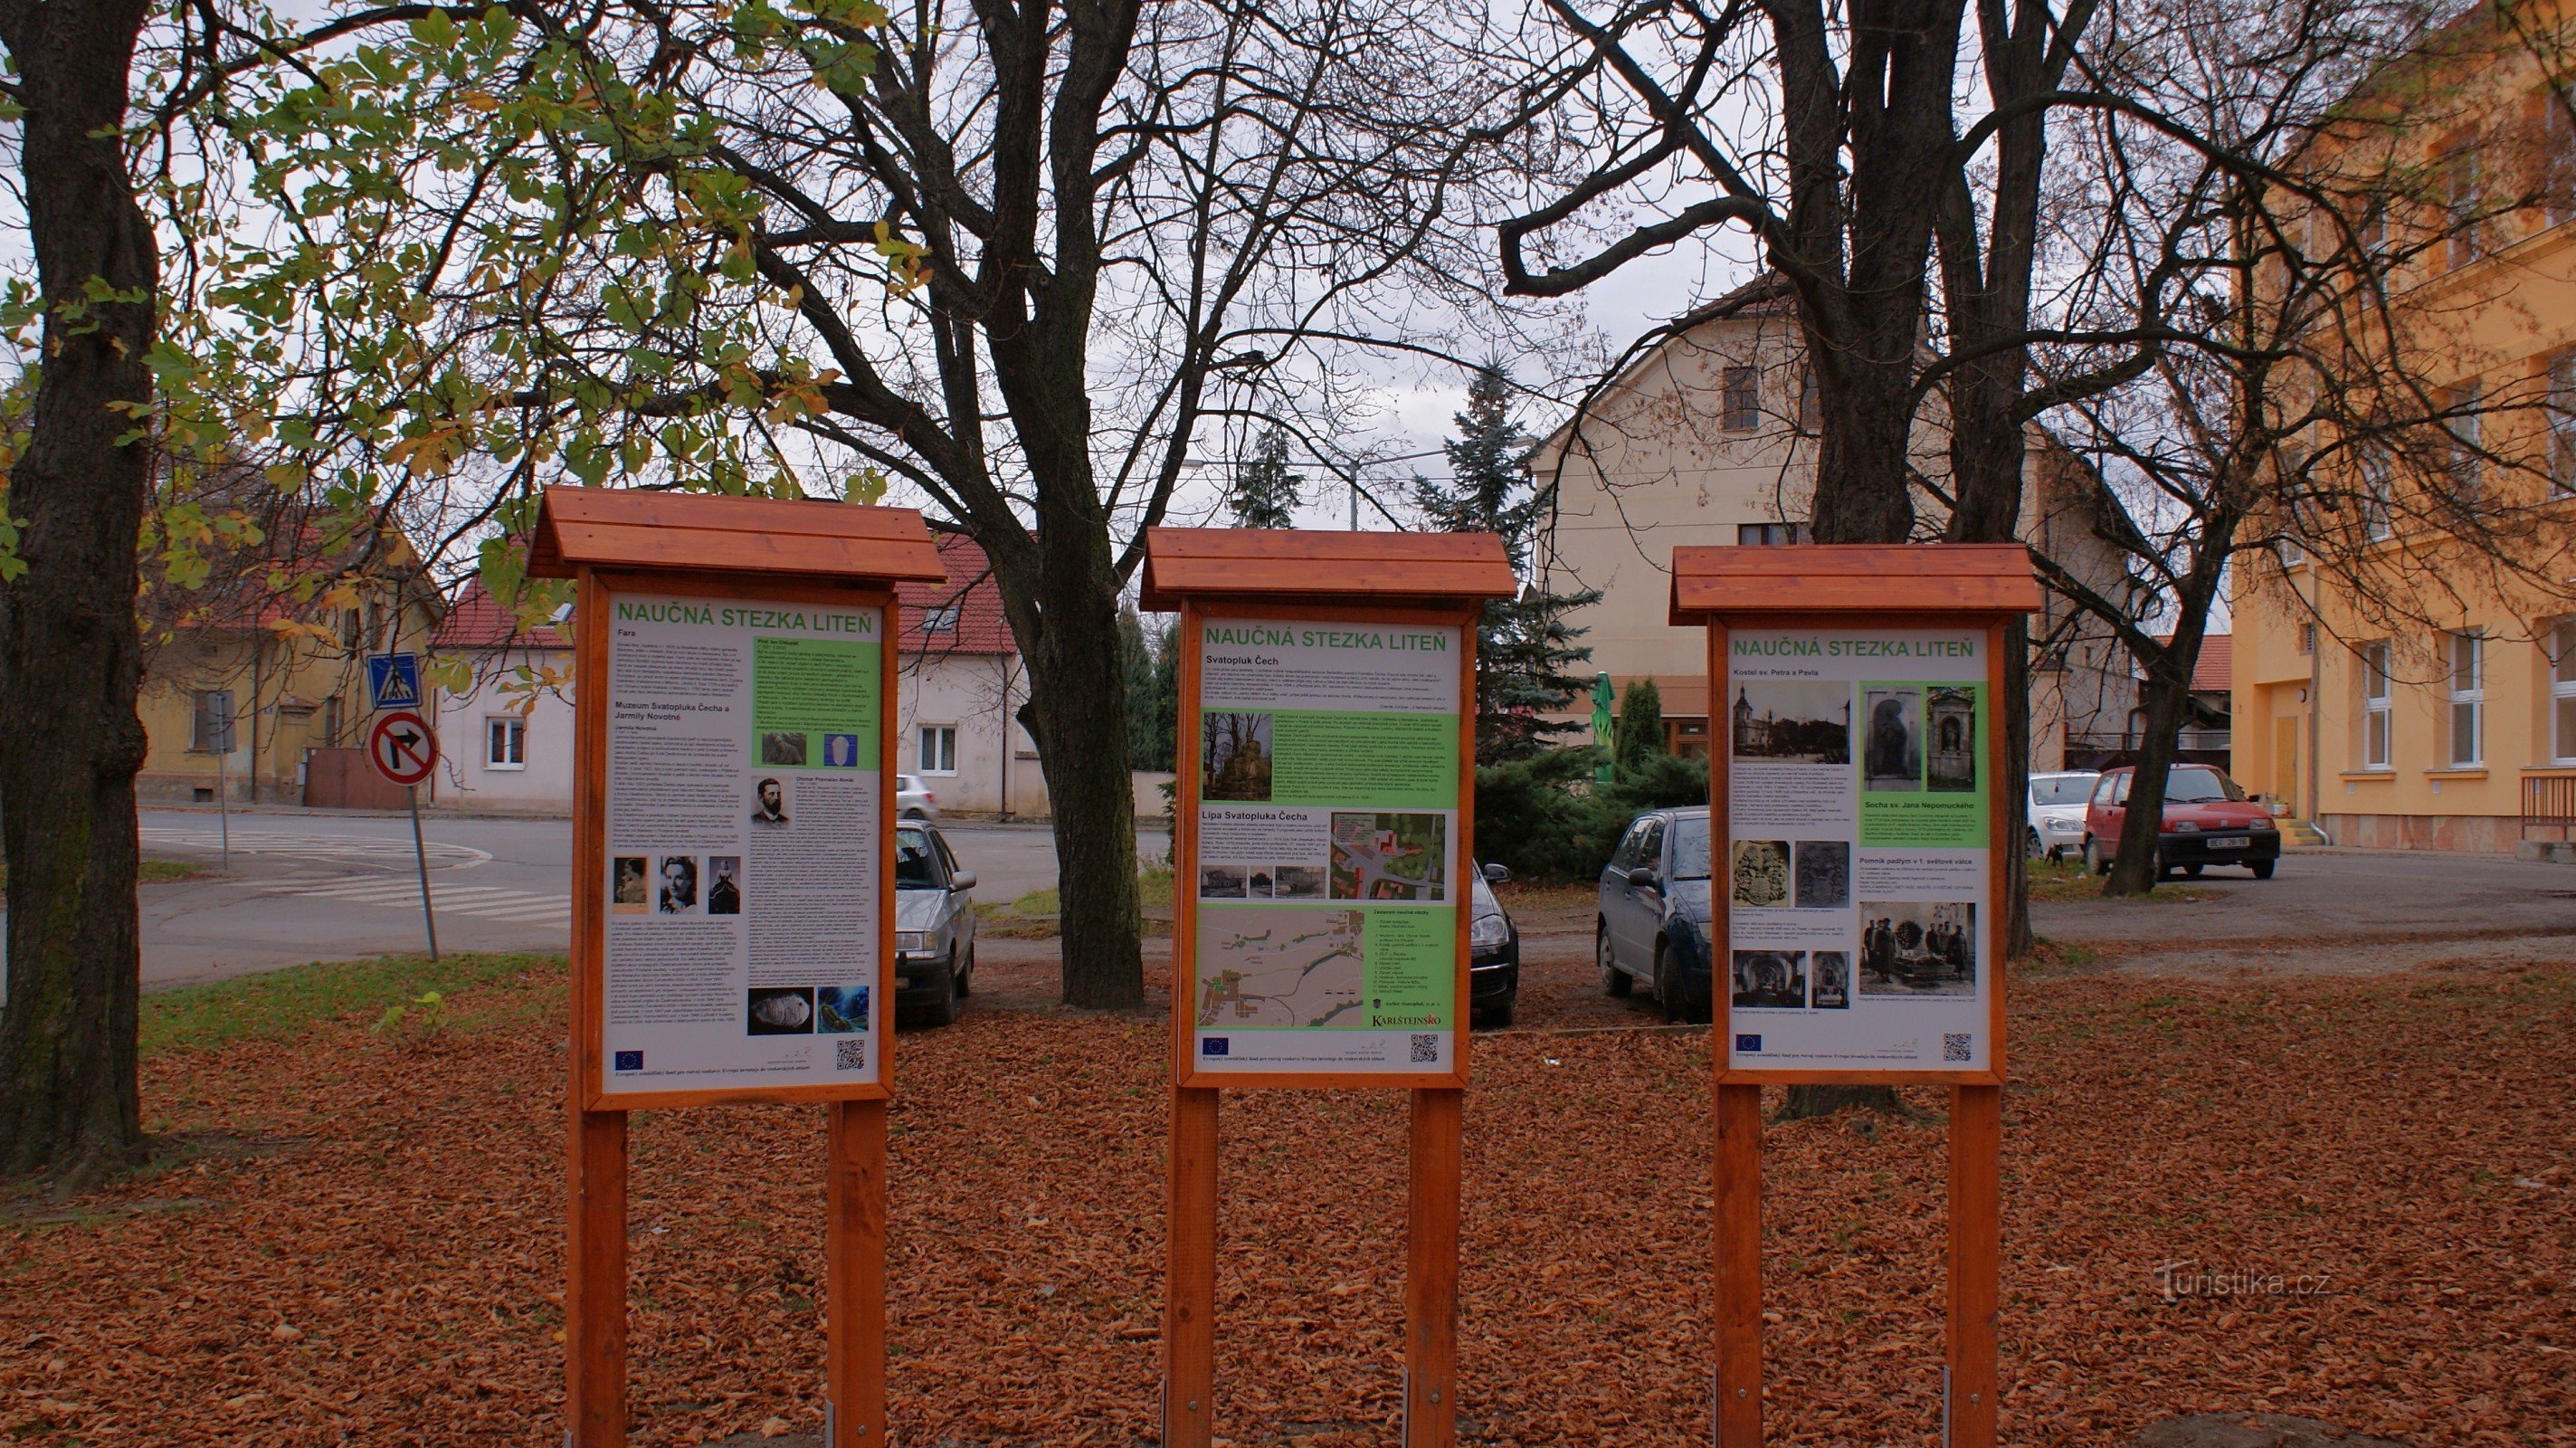 Zaustavne ploče za Poučnu stazu Liteń u vrtovima Svatopluka Cecha